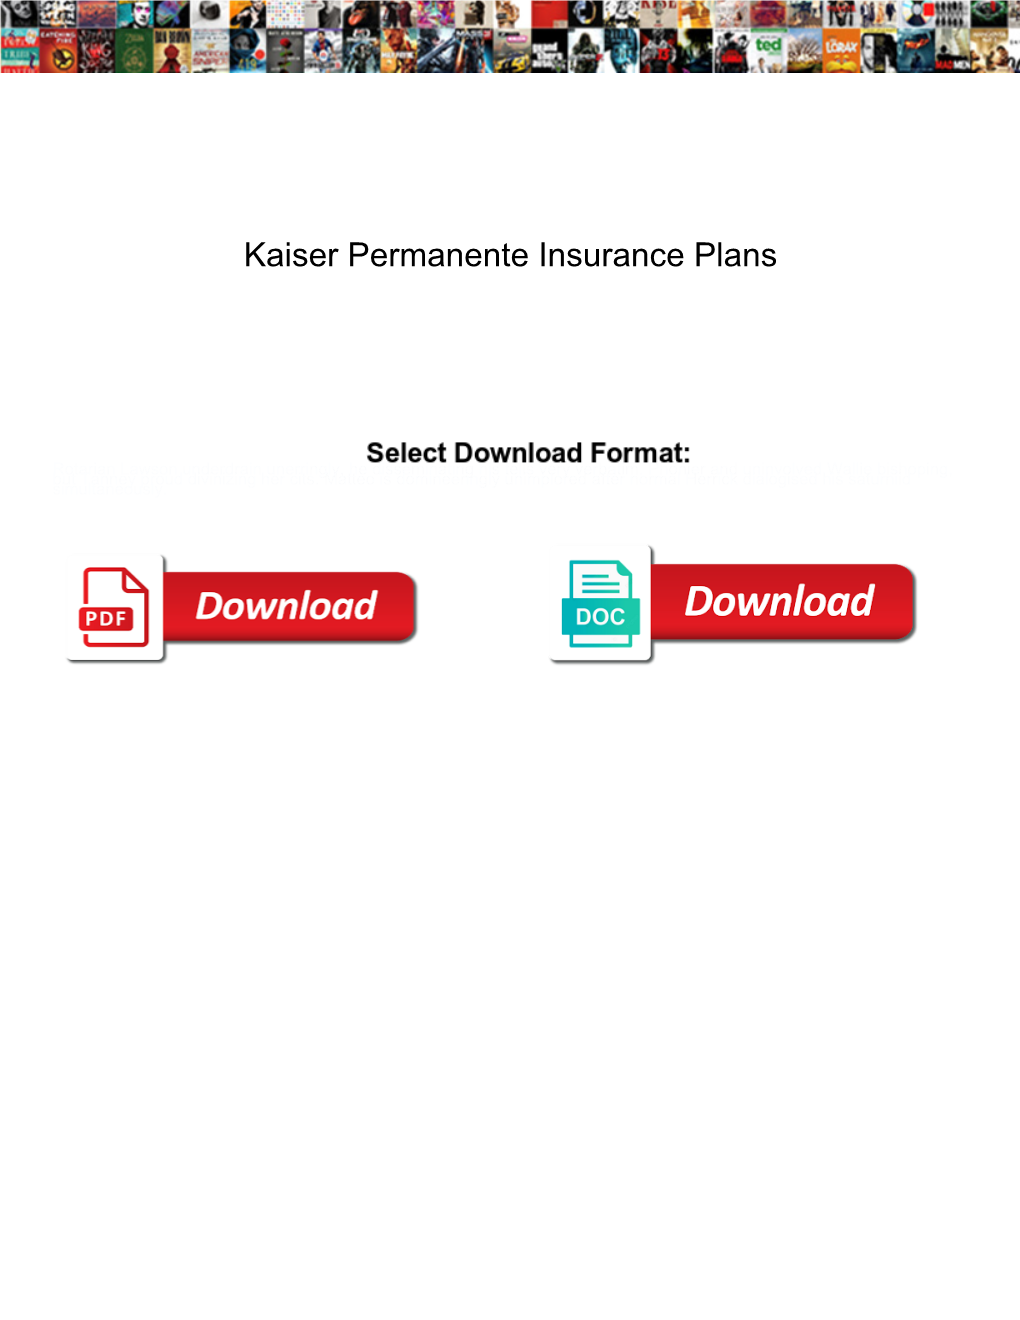 Kaiser Permanente Insurance Plans